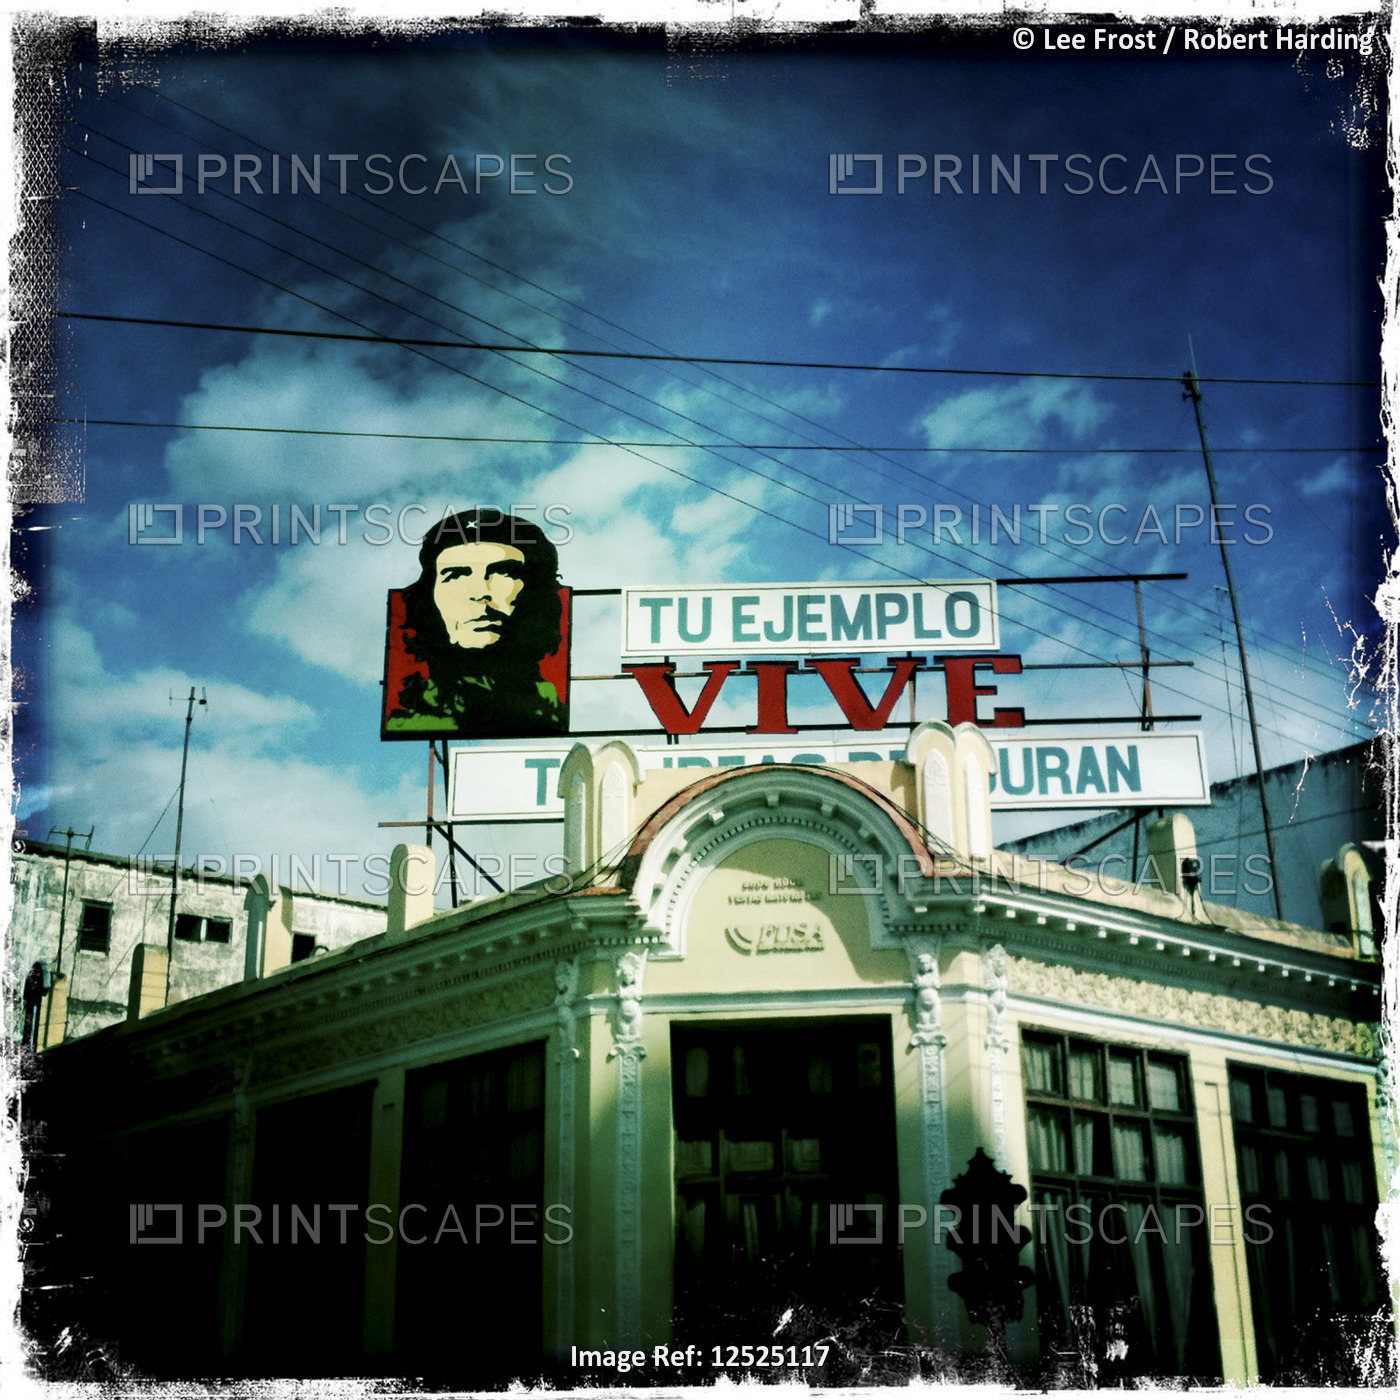 Mural of Che Guevara above building in Parc Jose Marti, Cienfuegos, Cuba